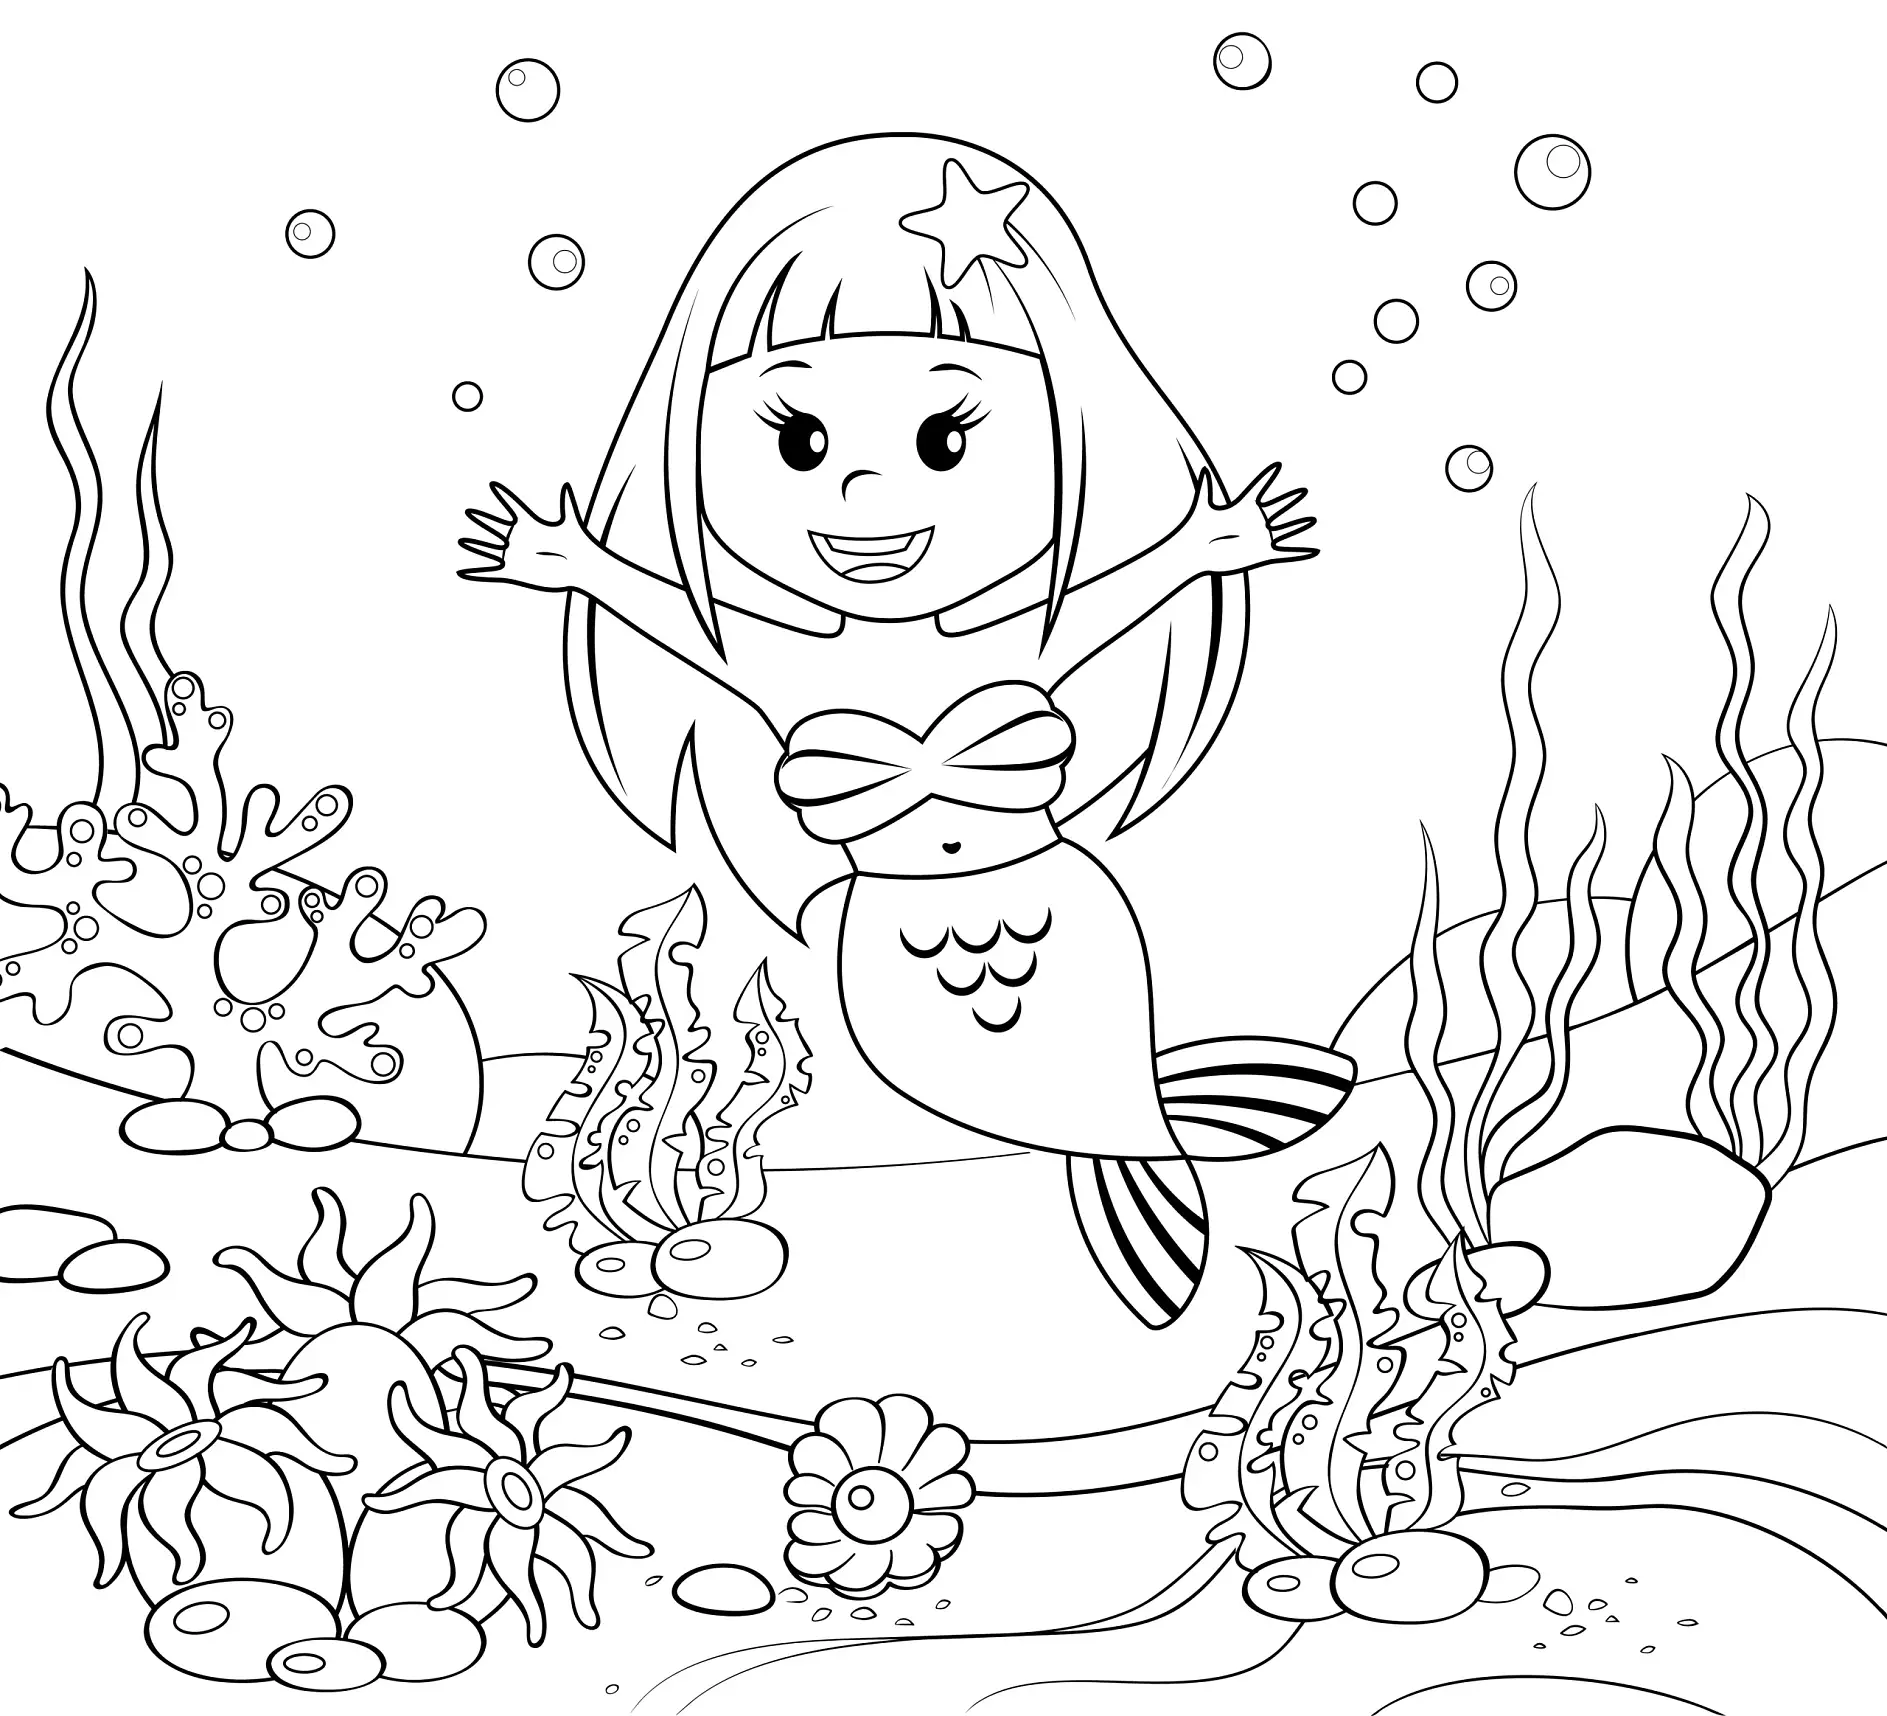 Ausmalbild Meerjungfrau mit Stern im Haar schwimmt fröhlich im Korallenriff